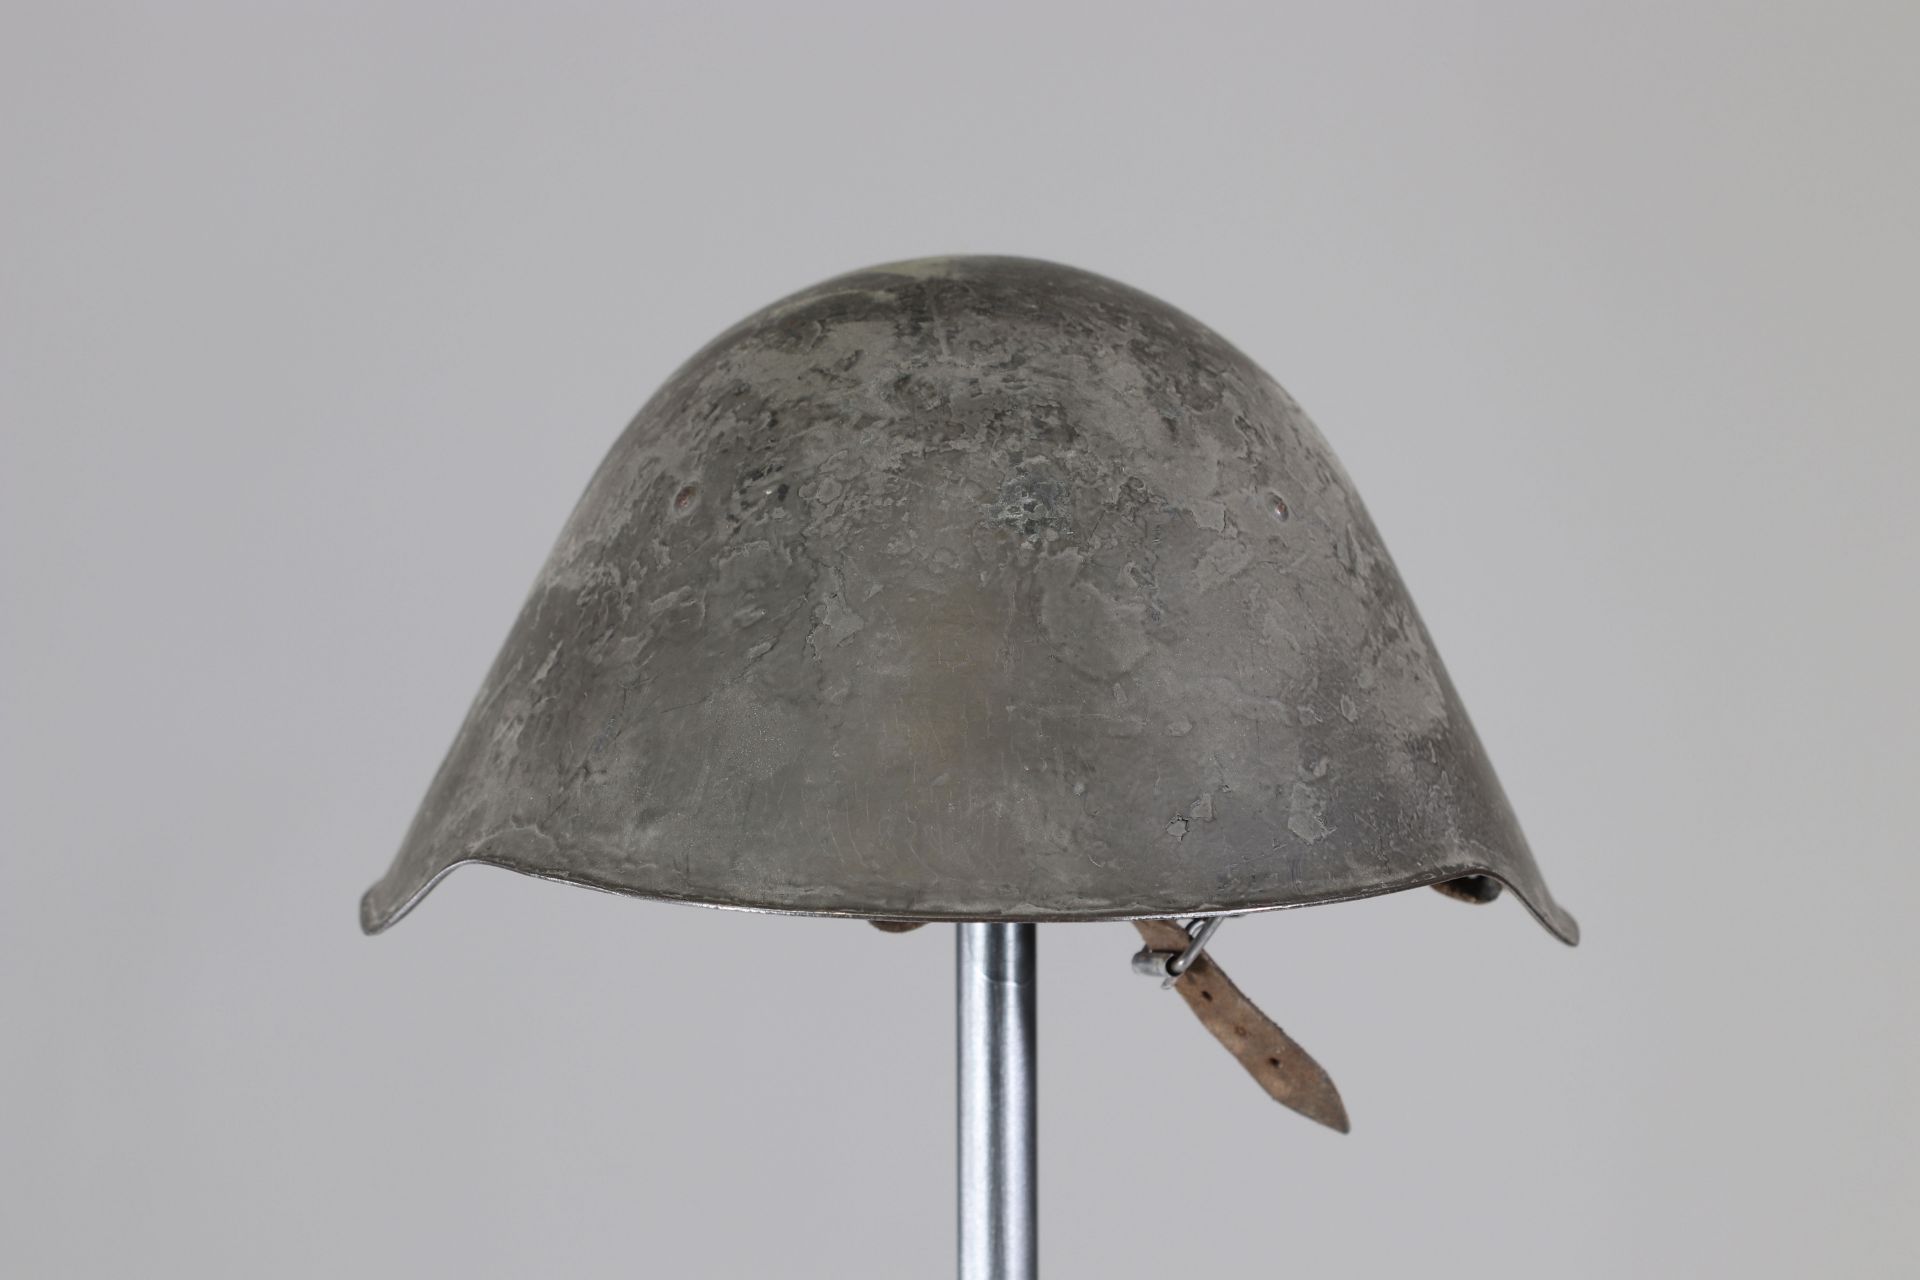 Eastern country helmet